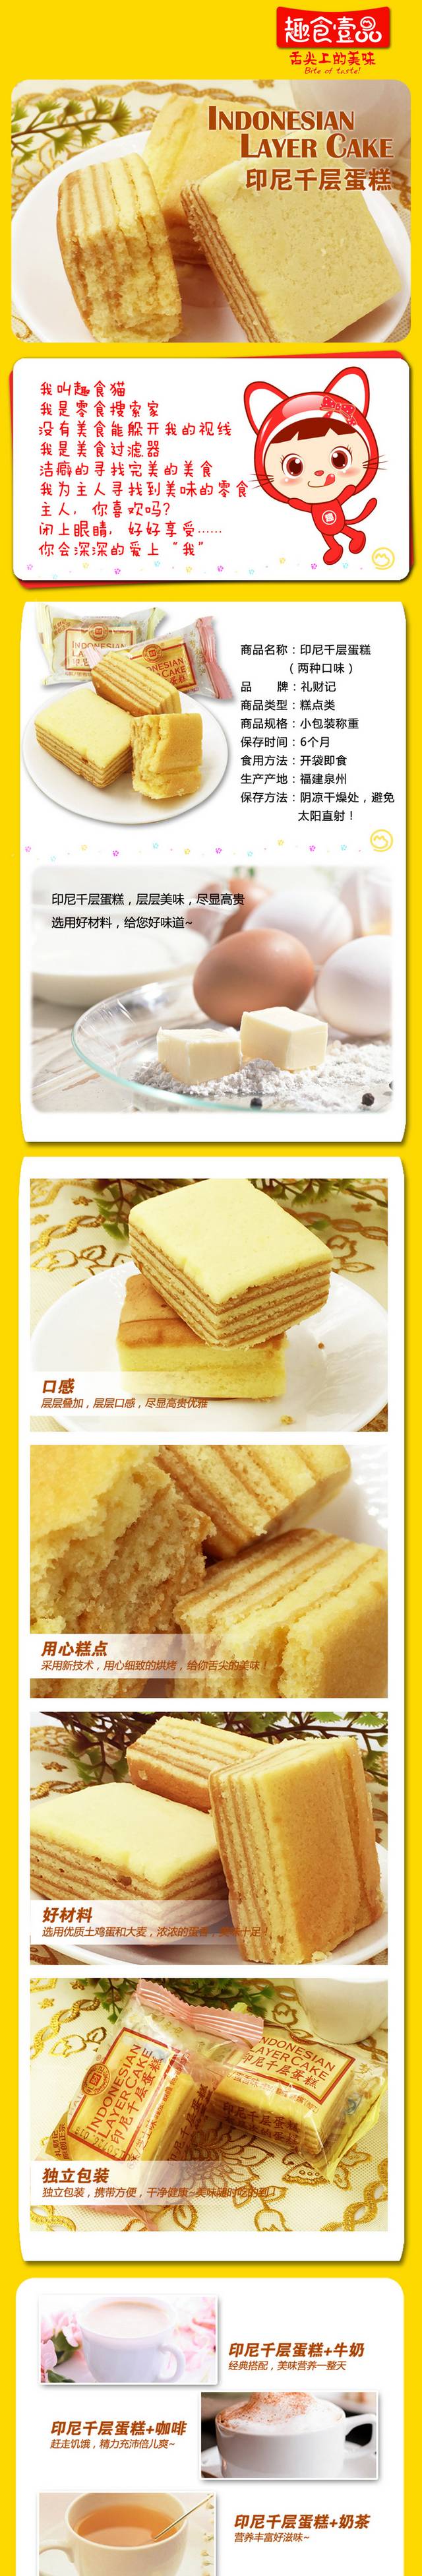 天猫食品面包蛋糕详情页PSD模板